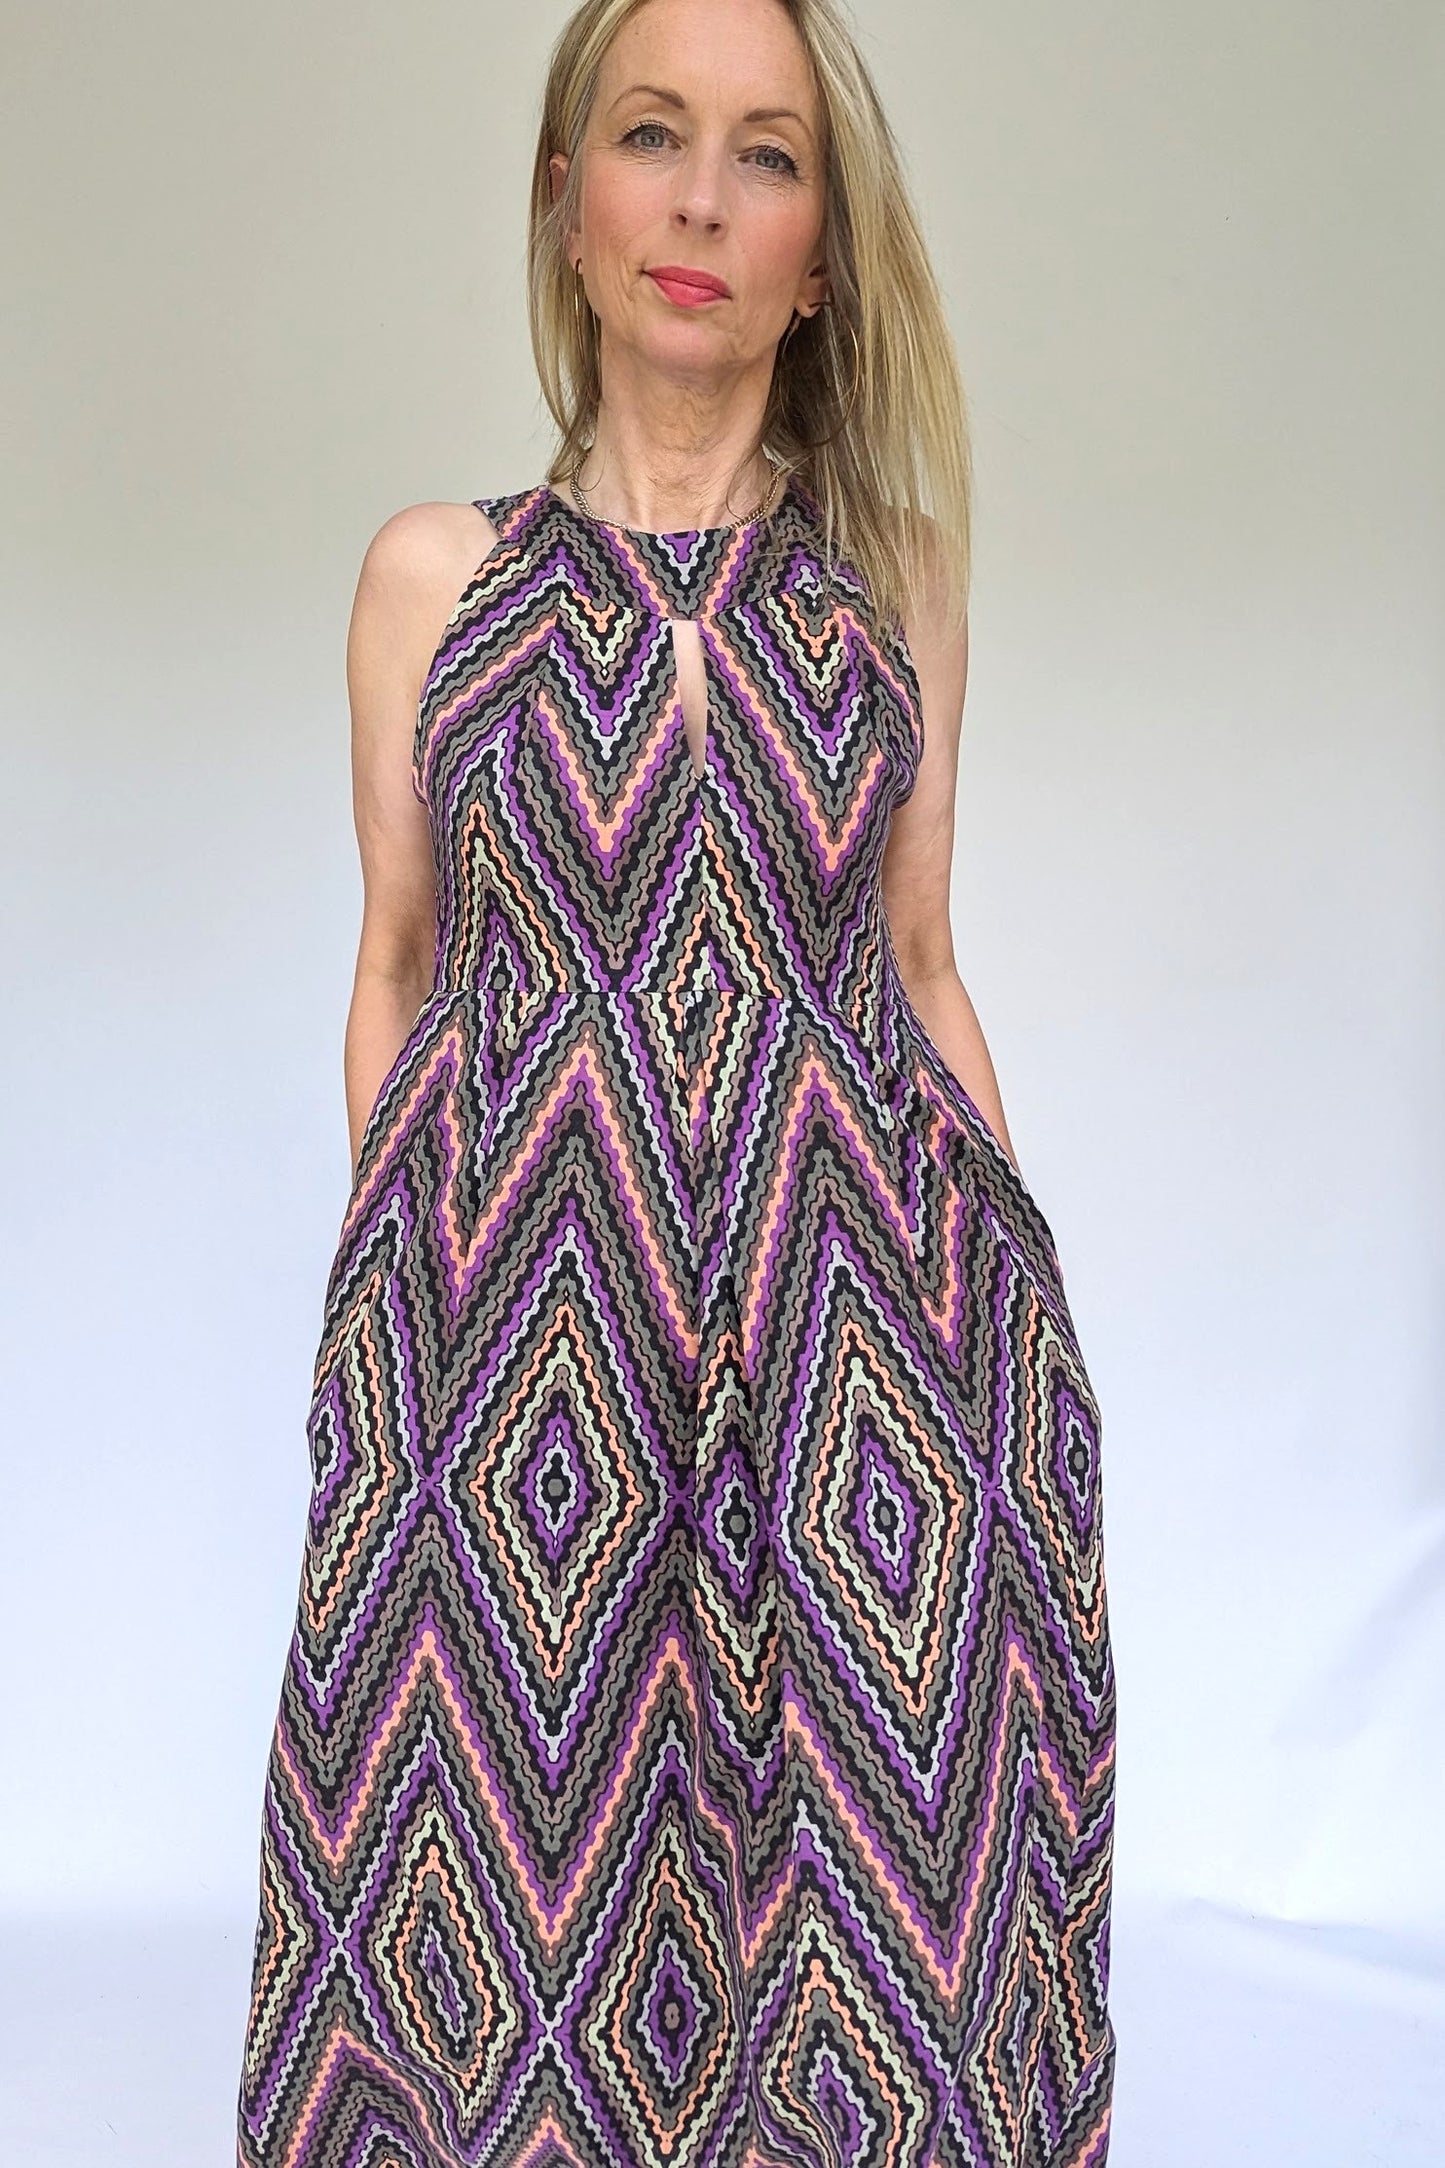 Sleeveless summer dress in purple grey pattern